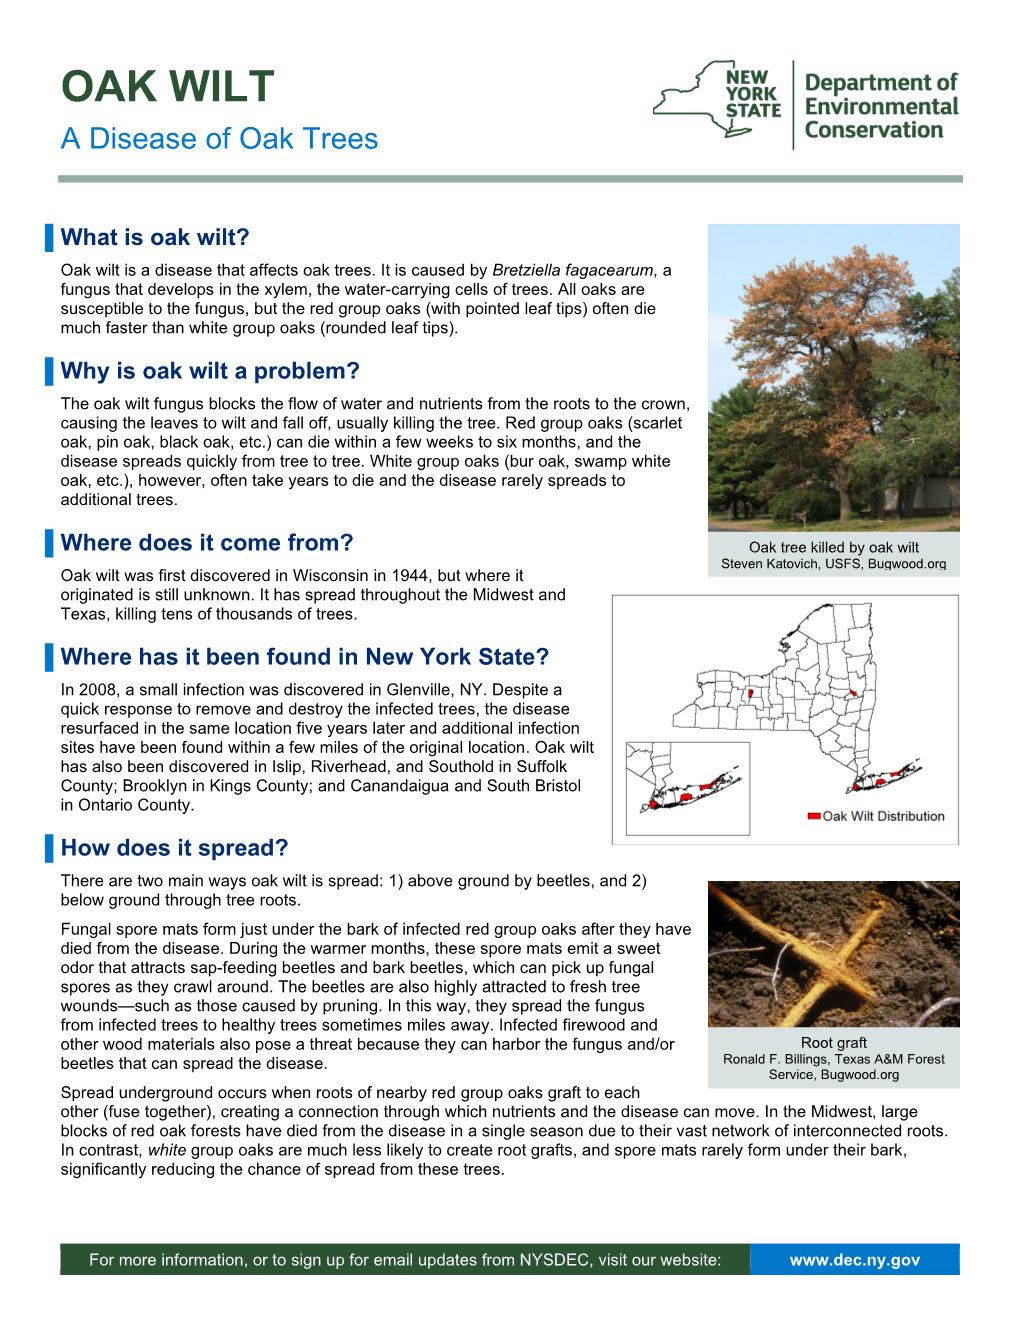 Oak Wilt: a Disease of Oak Trees